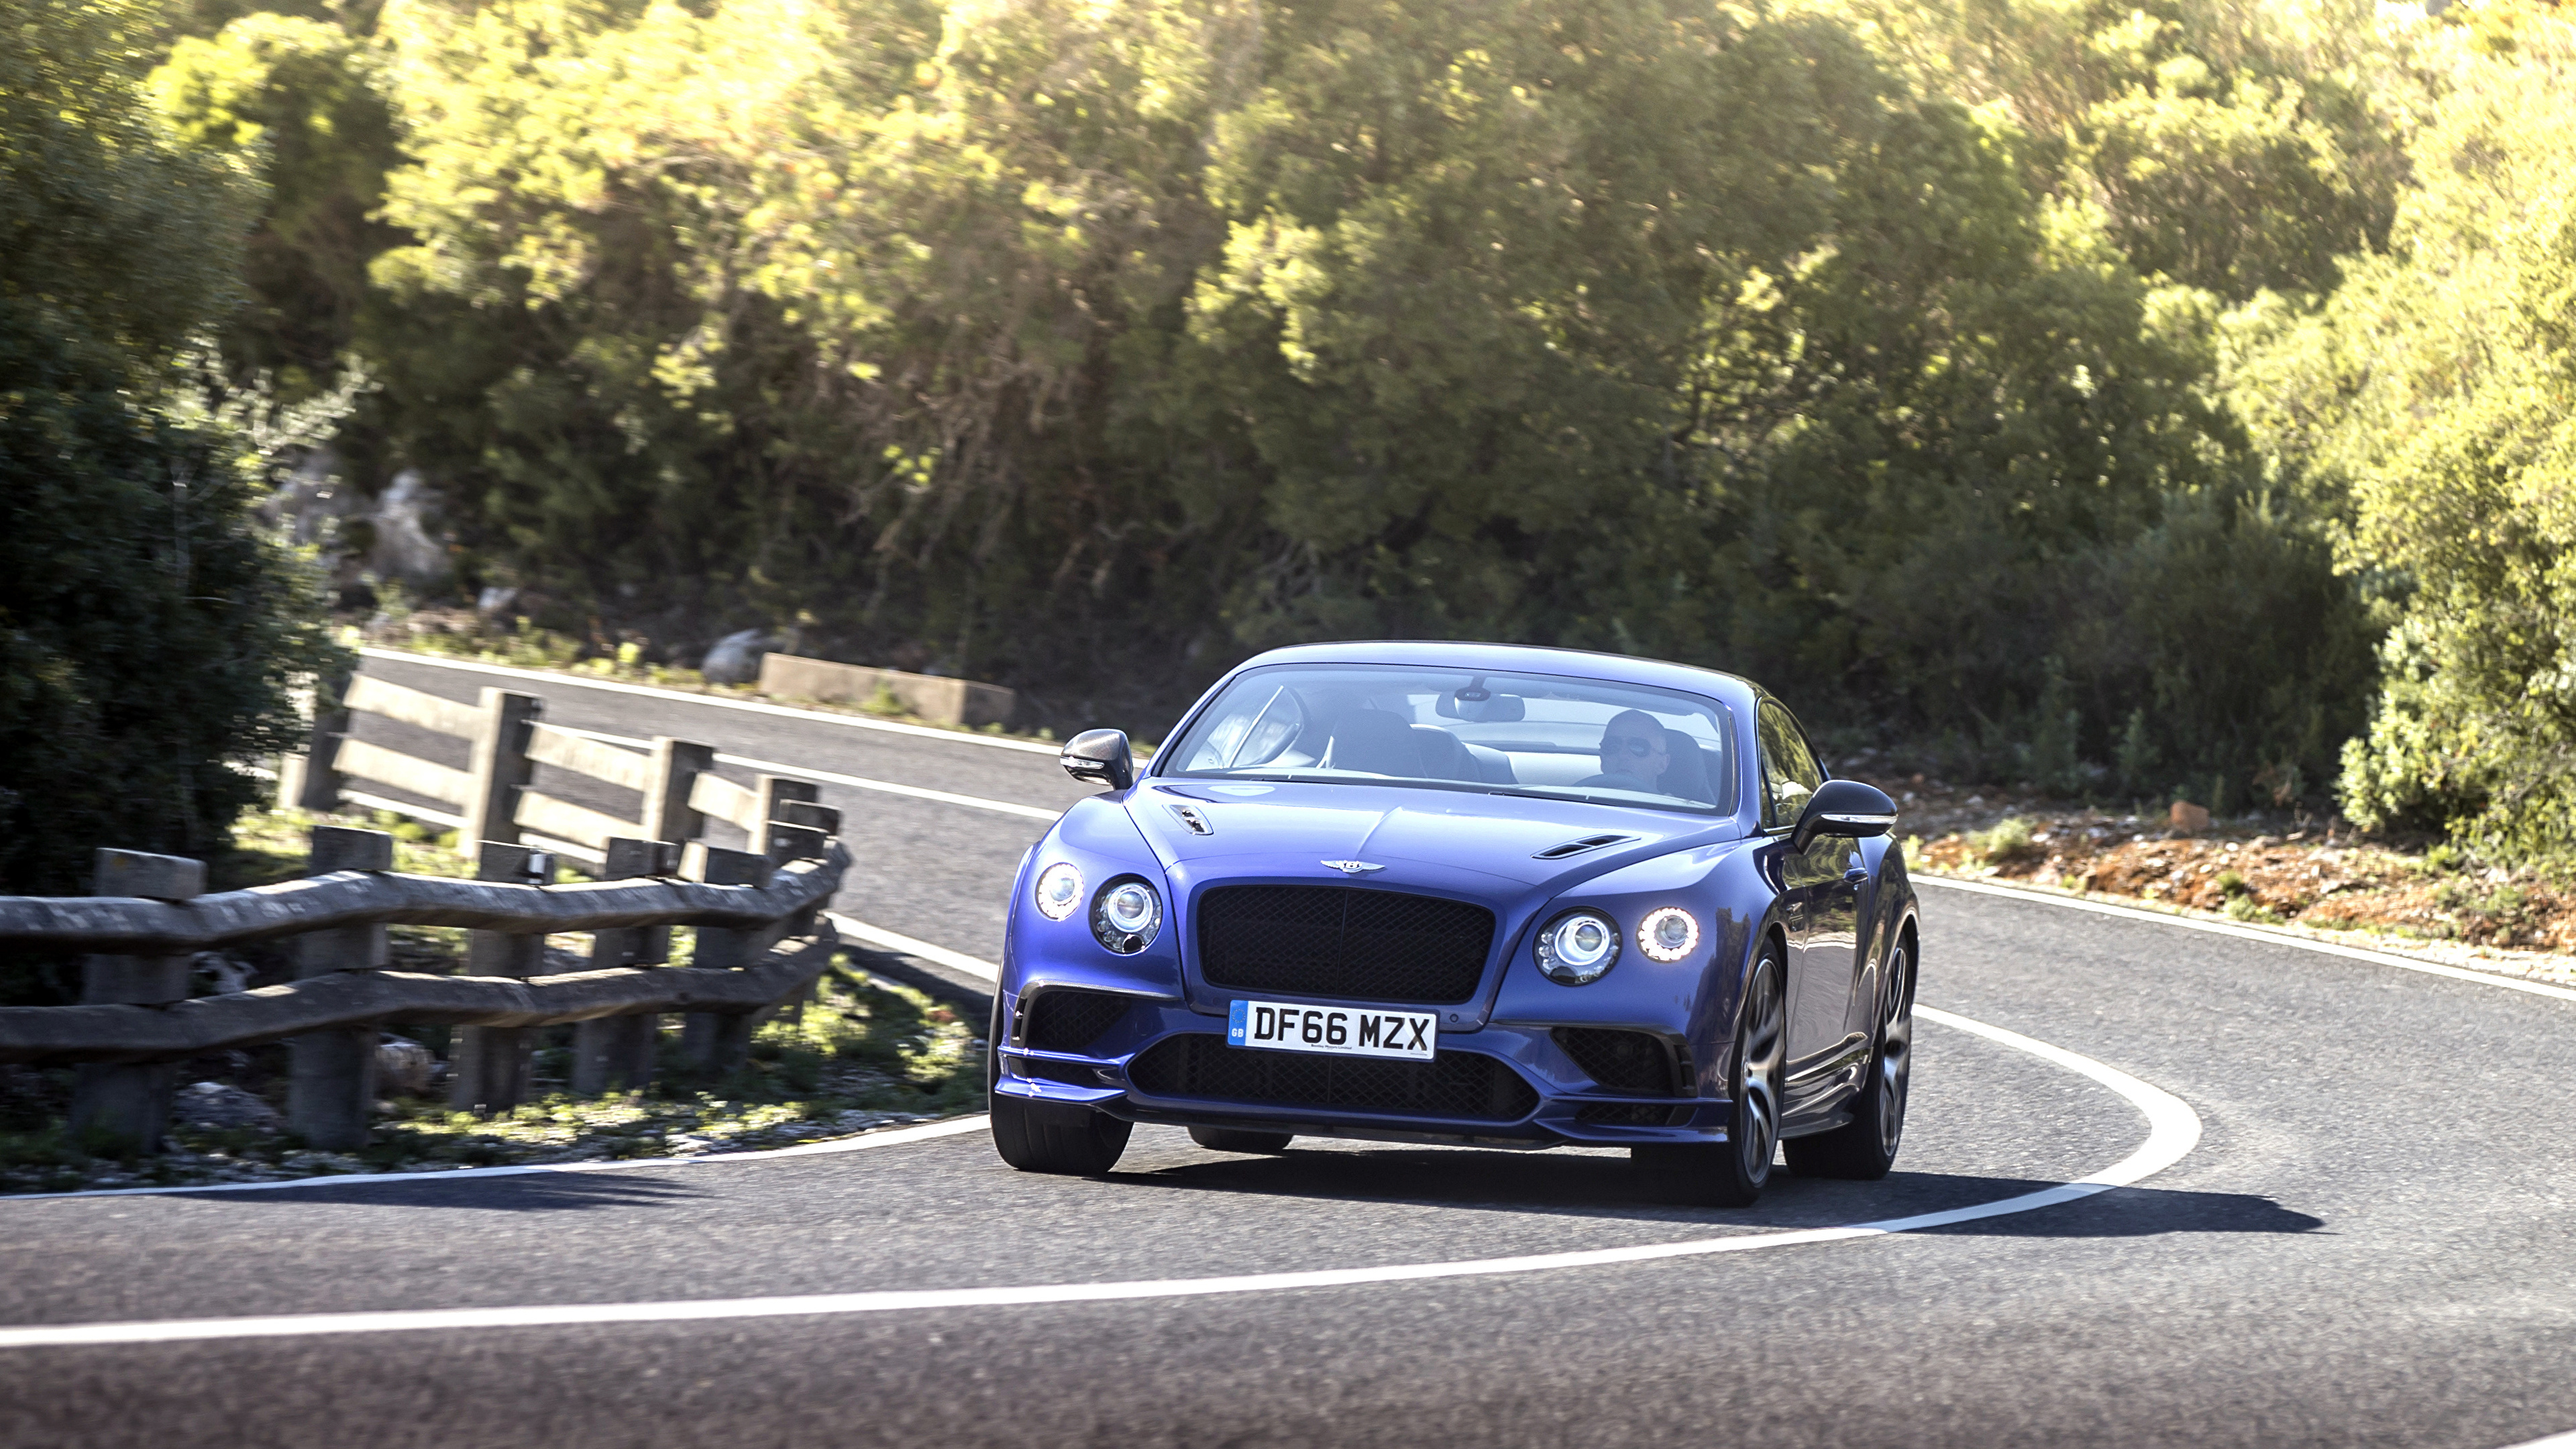 Фотографии Bentley continental gt supersport 2018 Синий Дороги едущий Спереди Автомобили 3840x2160 Бентли синяя синие синих едет едущая Движение скорость авто машины машина автомобиль